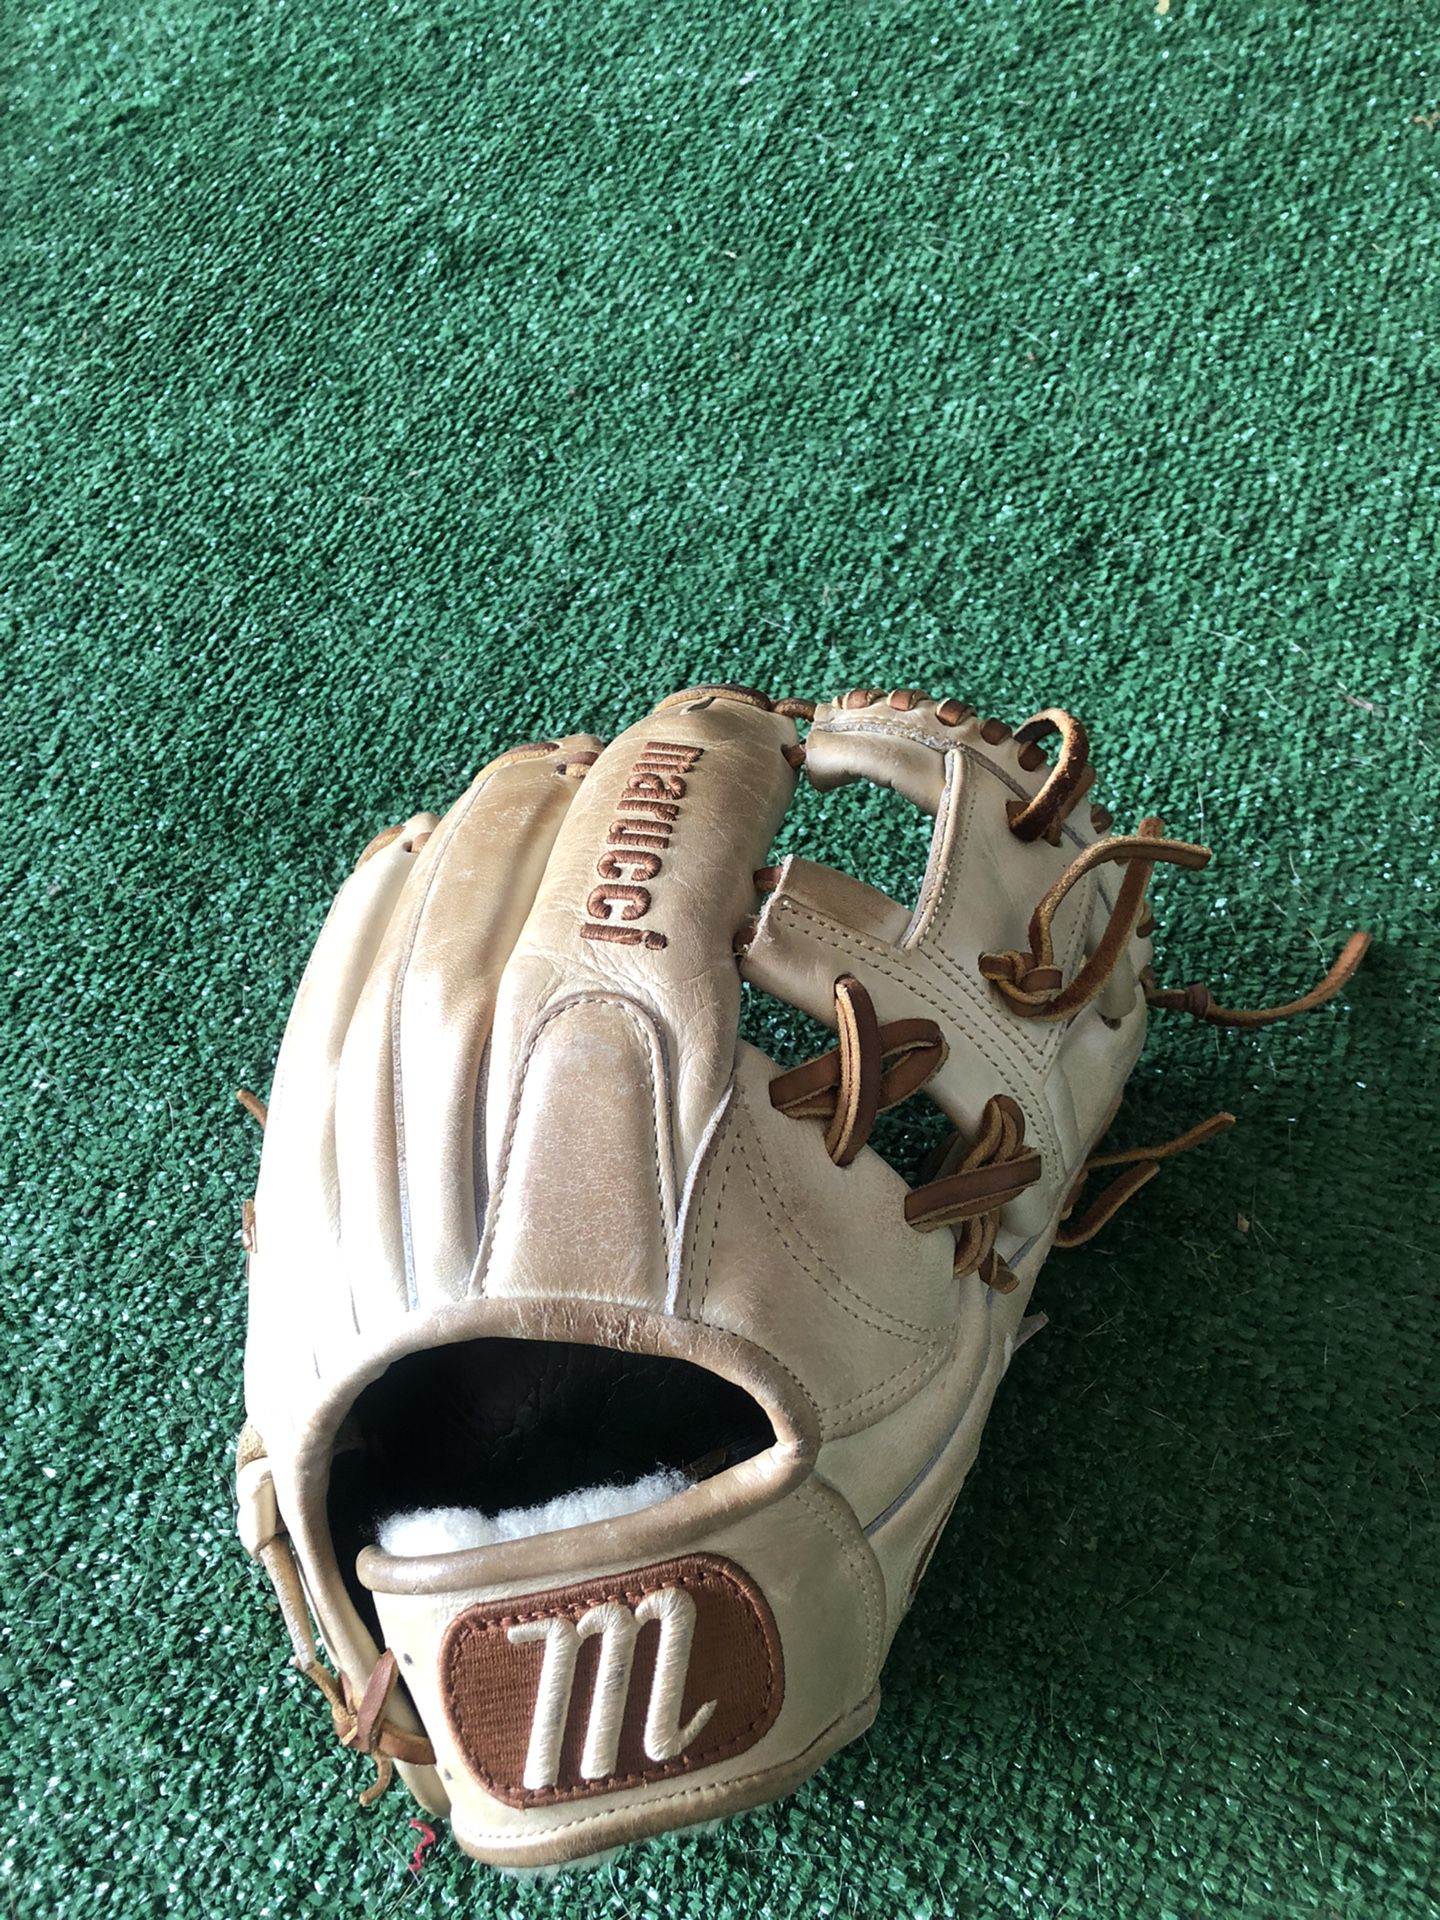 Marucci Baseball Glove 11 1/4”